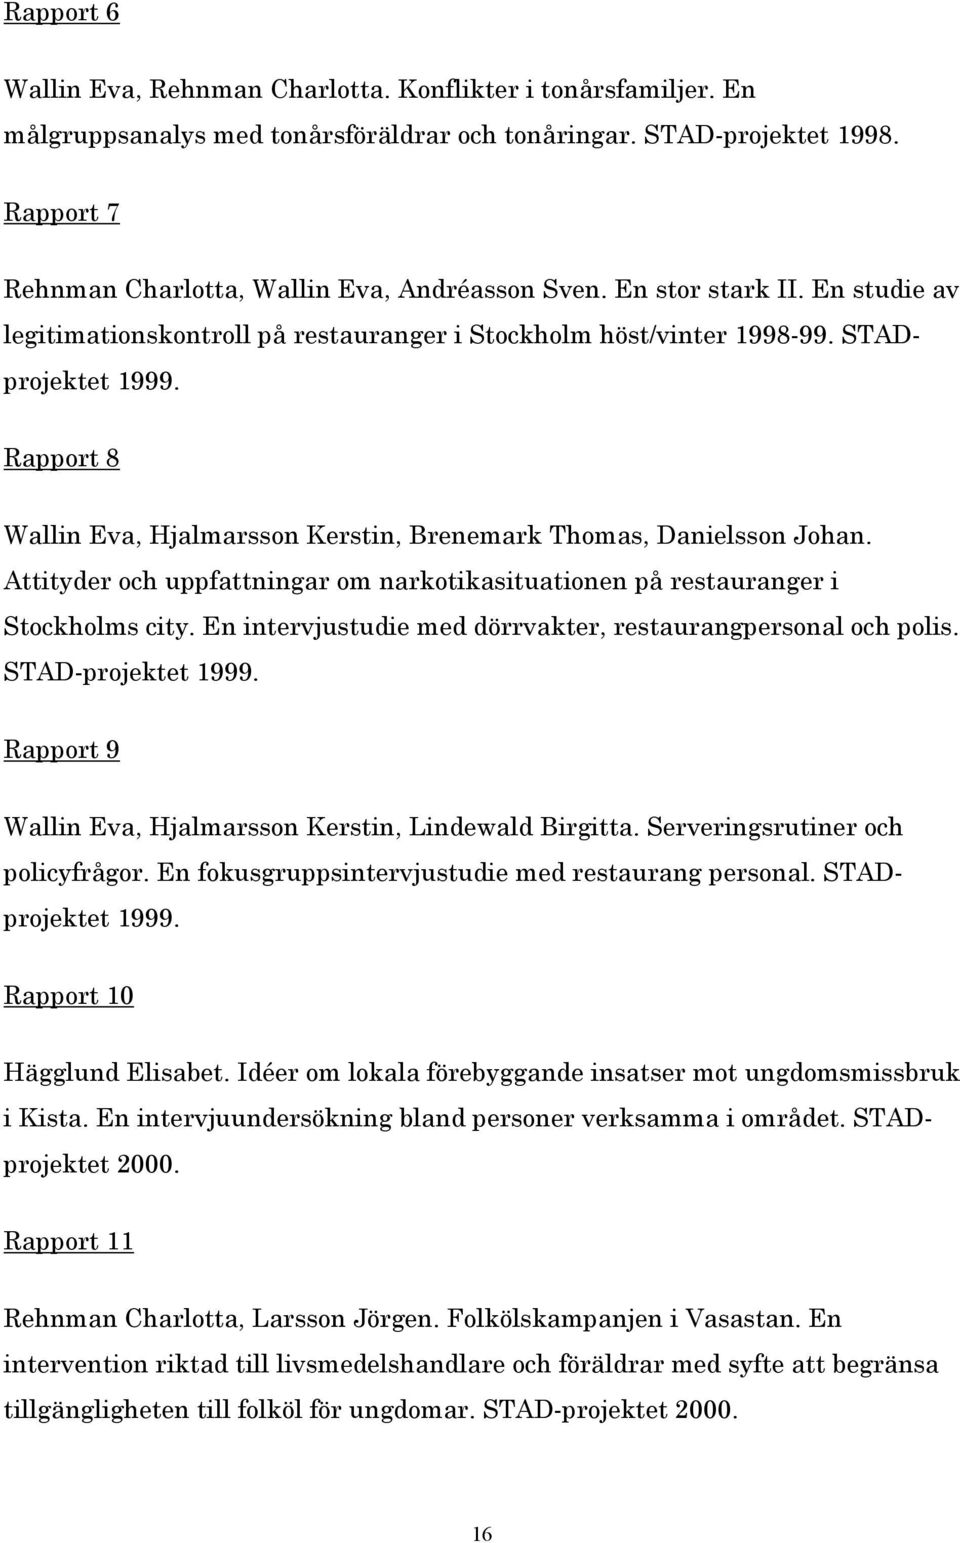 Rapport 8 Wallin Eva, Hjalmarsson Kerstin, Brenemark Thomas, Danielsson Johan. Attityder och uppfattningar om narkotikasituationen på restauranger i Stockholms city.